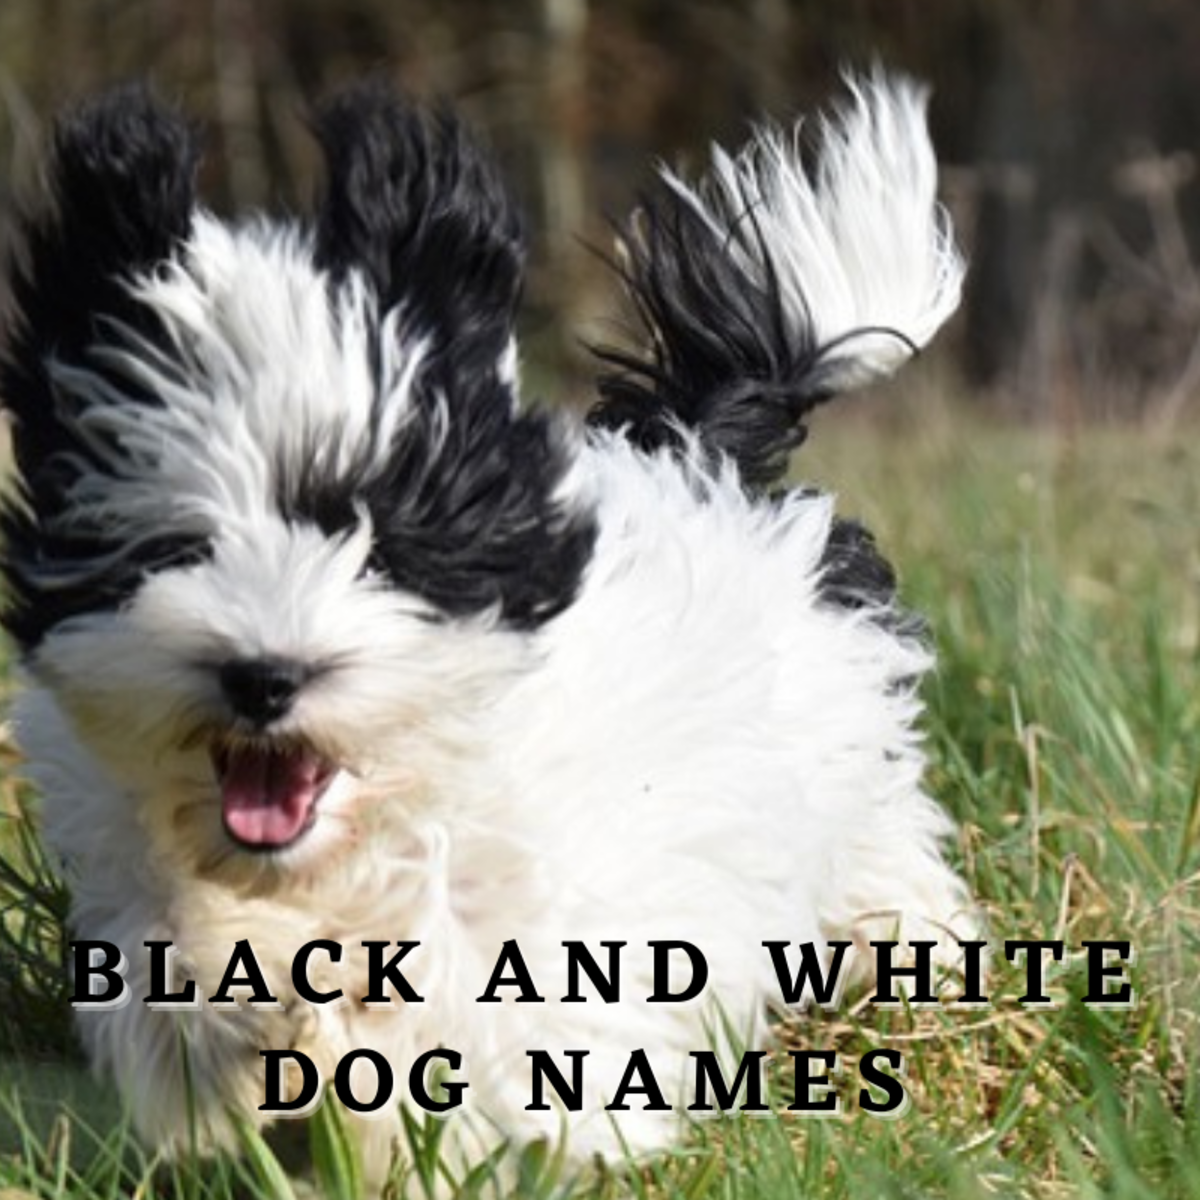 Black and white dog running